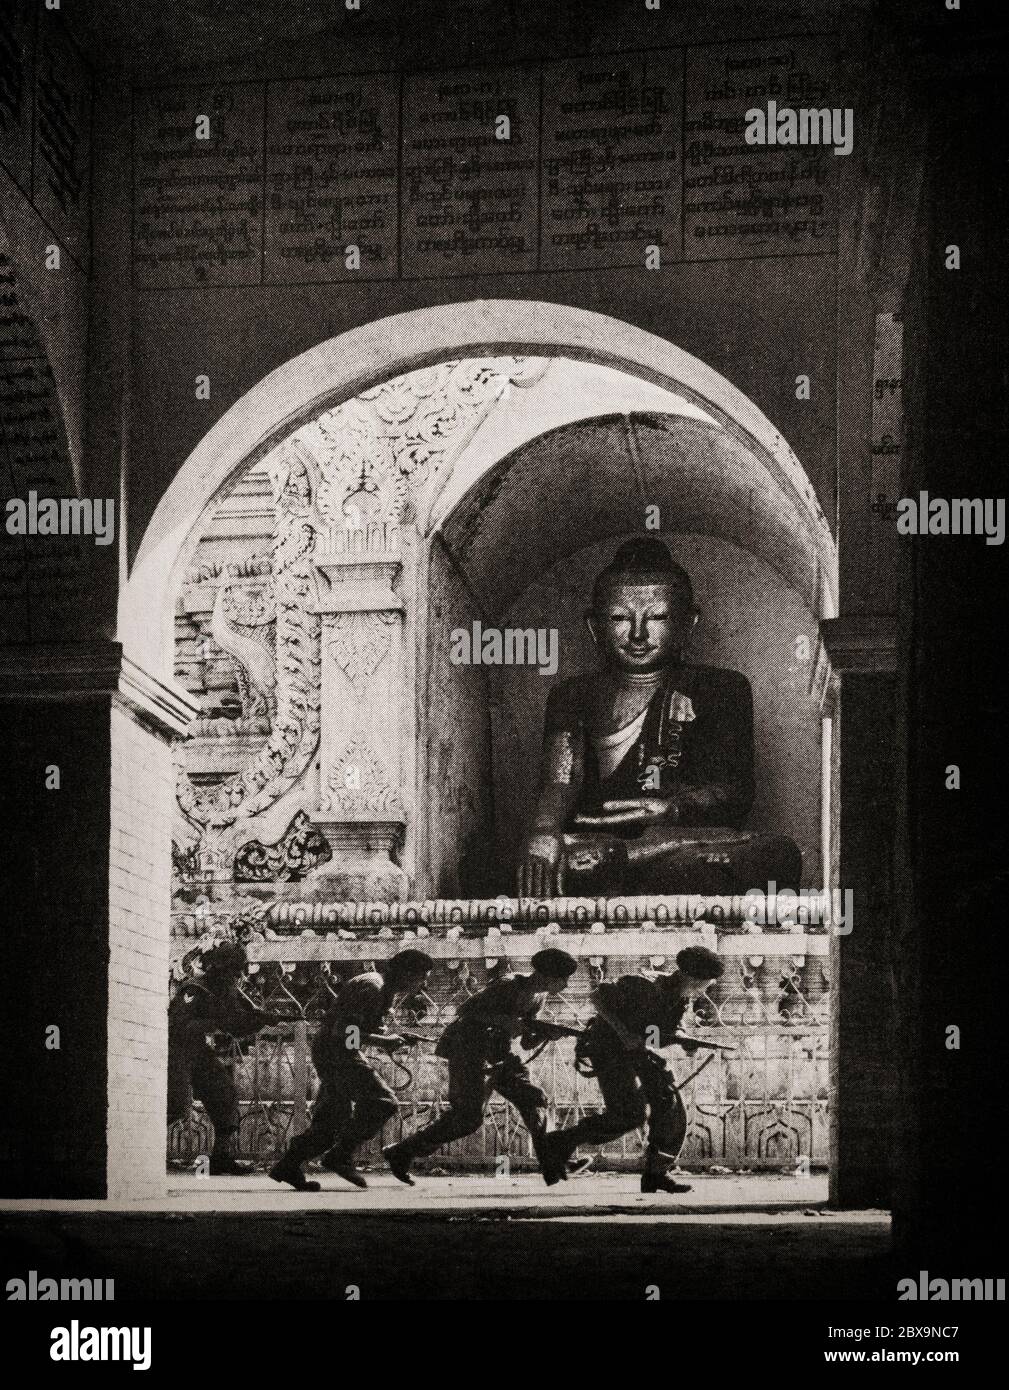 Des soldats britanniques et indiens ont franchi un Bouddha sur Pagoda Hill alors qu'ils chargent une position ennemie à Mandalay, lors de l'opération Dracula, une attaque amphibie aérienne de la Seconde Guerre mondiale contre Rangoon lancée par les forces britanniques, américaines et indiennes pendant la campagne birmane en avril et mai 1945. Banque D'Images